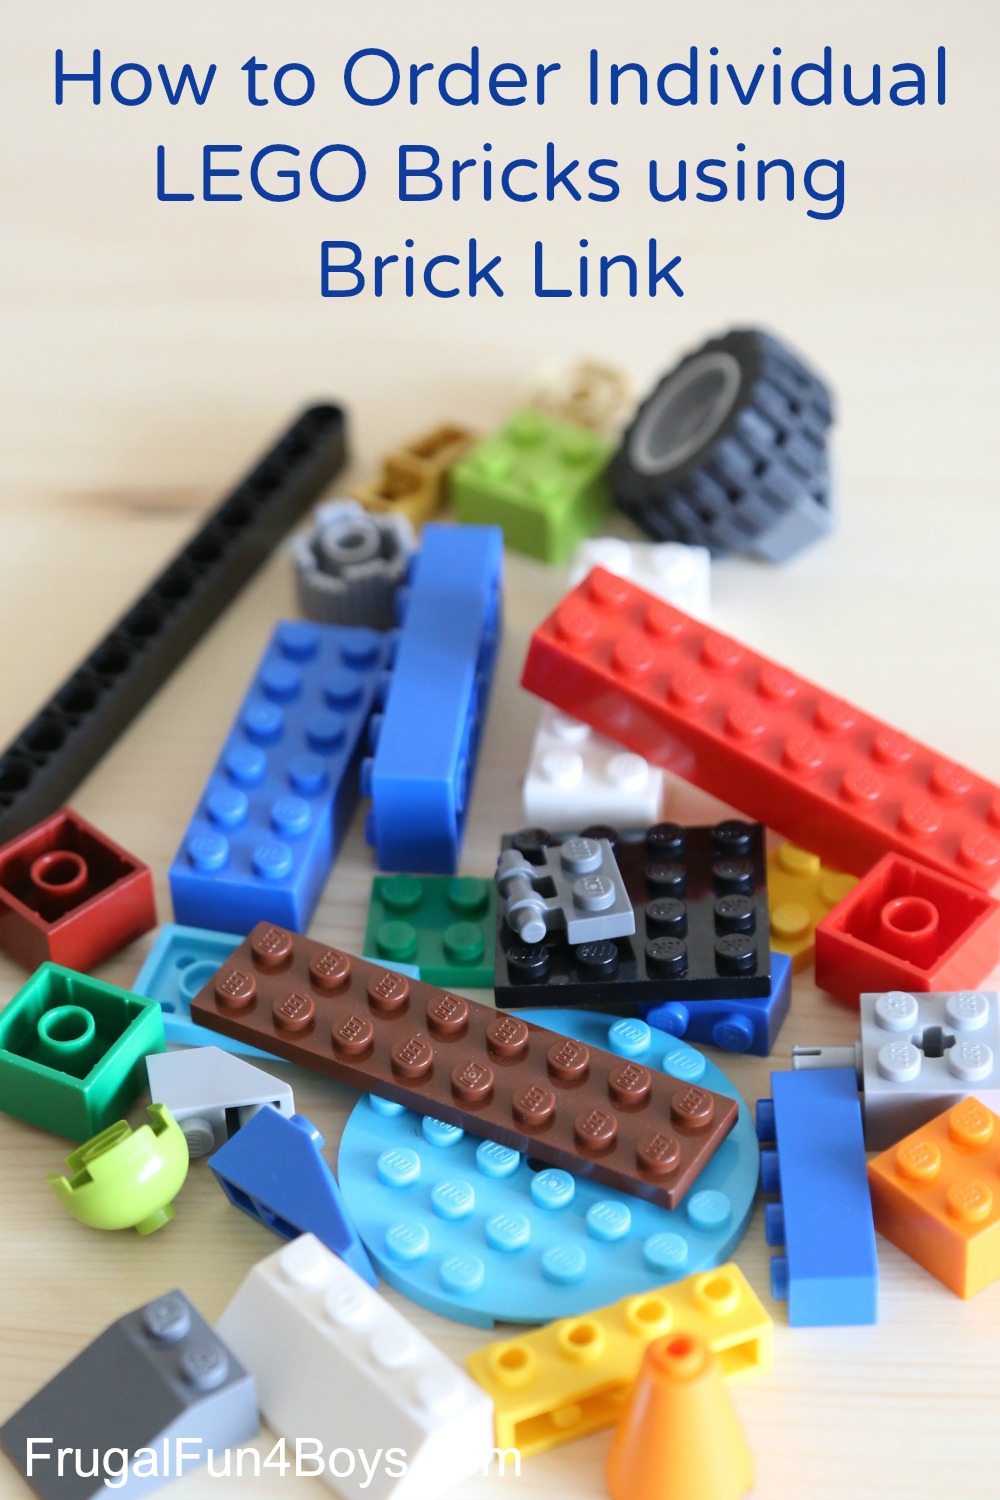 1x3 White Standard Brick Bricks ~ New Lego Parts 8